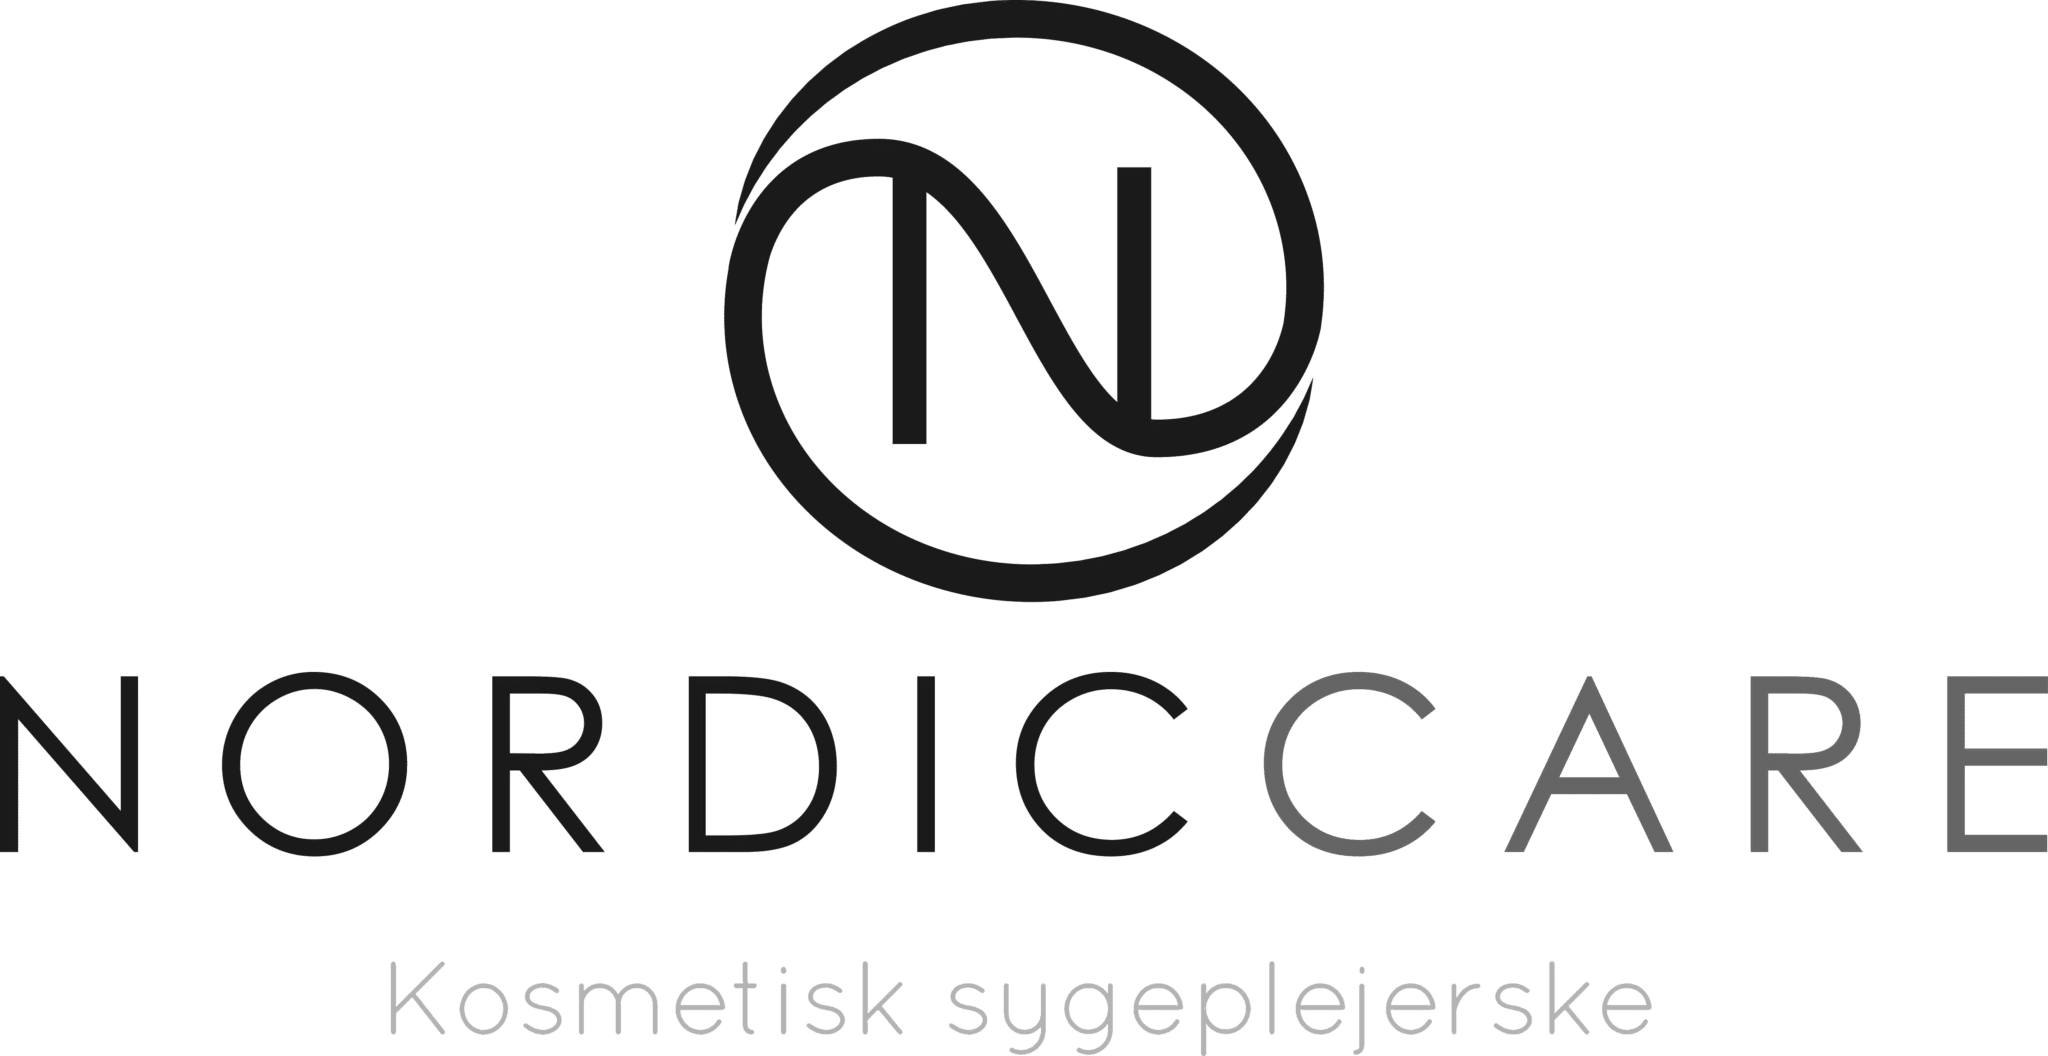 Nordic Care